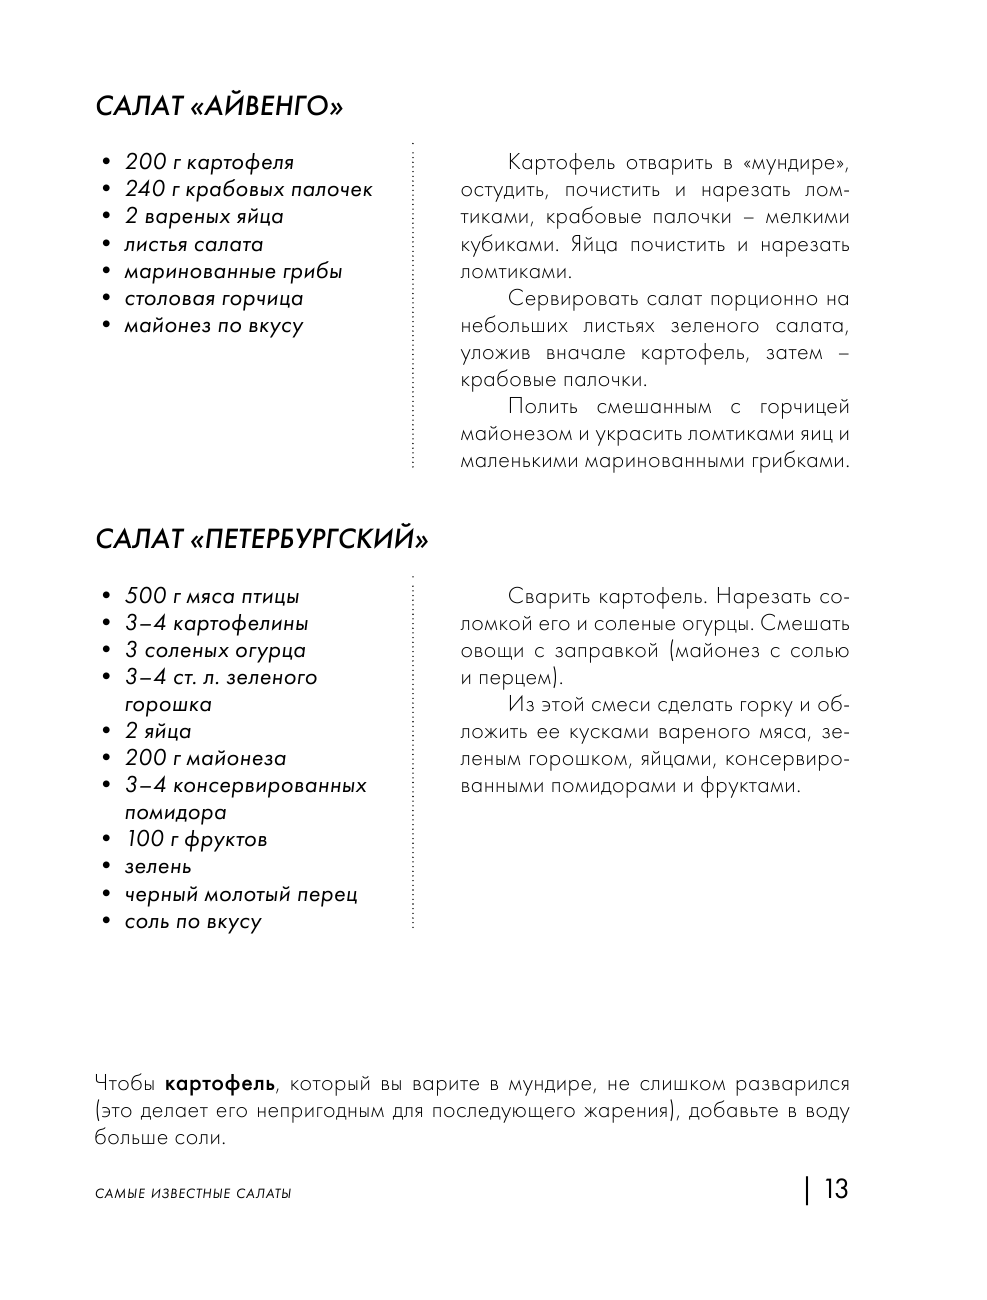 Энциклопедия салатов. Рецепты и рекомендации - фото №15